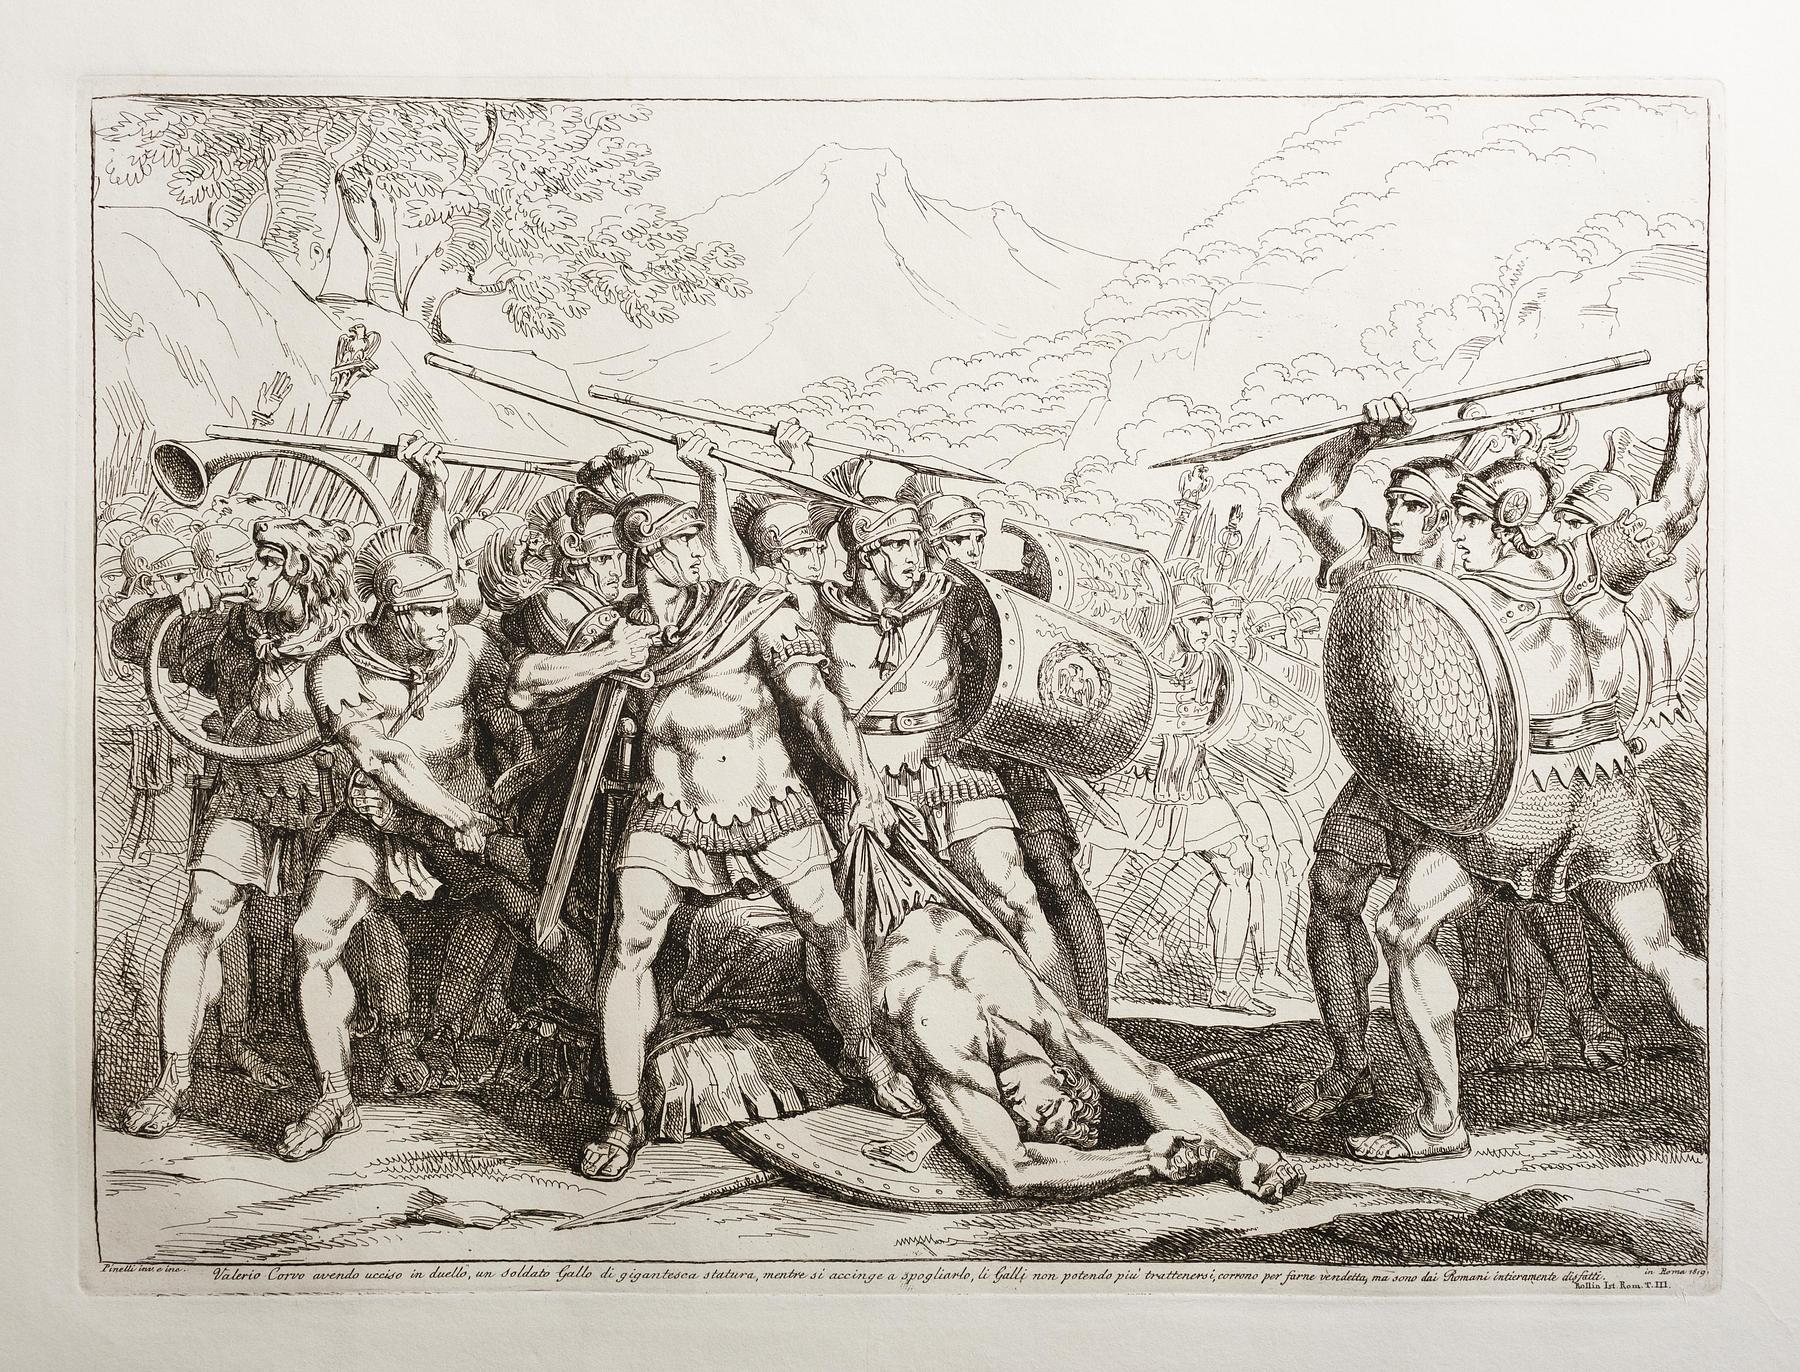 Valerio Corvo, der har dræbt en Gallo-soldat af gigantisk statur i en duel. Mens han er ved at klæde ham af, løber gallerne, som ikke er i stand til at holde sig selv tilbage, mod ham for at hævne ham, men de bliver fuldstændigt besejret af romerne, E943,43